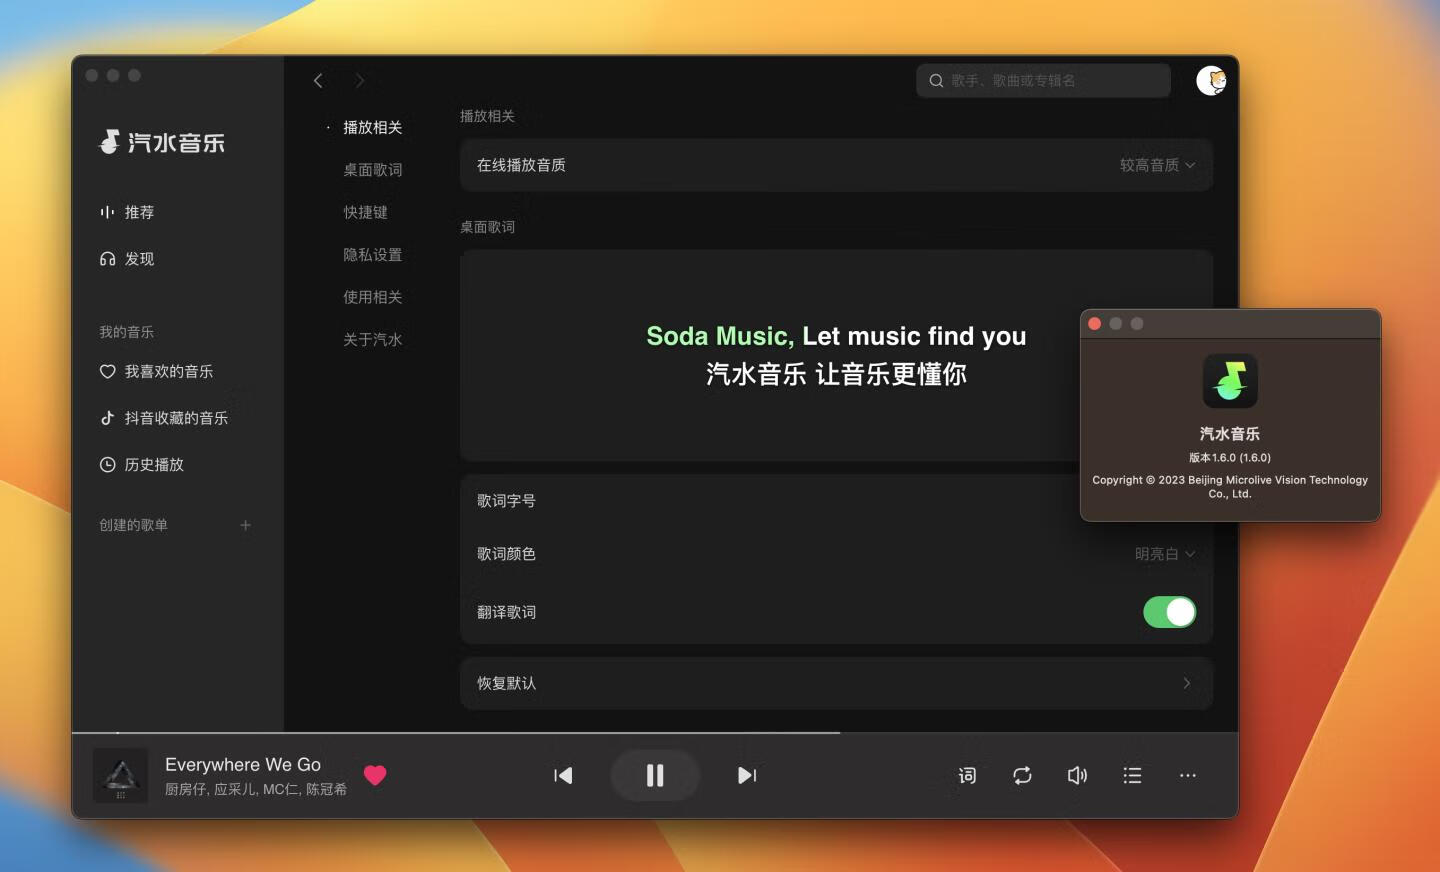 汽水音乐 for mac v1.6.0 抖音官方出品的音乐app